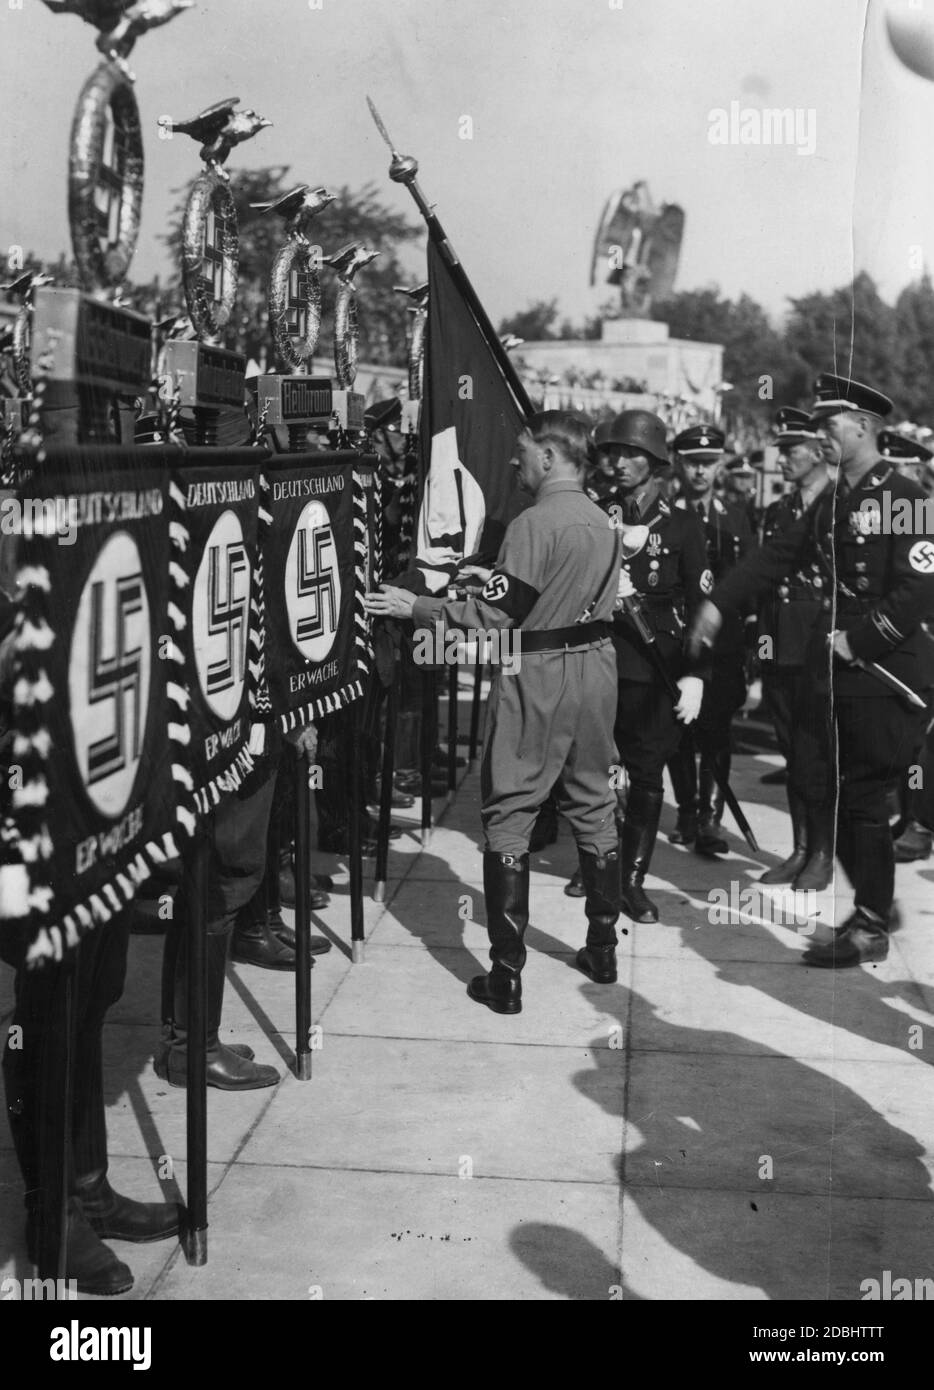 Adolf Hitler alla consacrazione della bandiera nella Luitpoldarena al Congresso del Partito nazista del 1934, dove Hitler tocca nuovi standard, tra cui la bandiera di Heilbronn, con la bandiera della Beer Hall Putsch del 1923, la cosiddetta Bandiera del sangue. Foto Stock